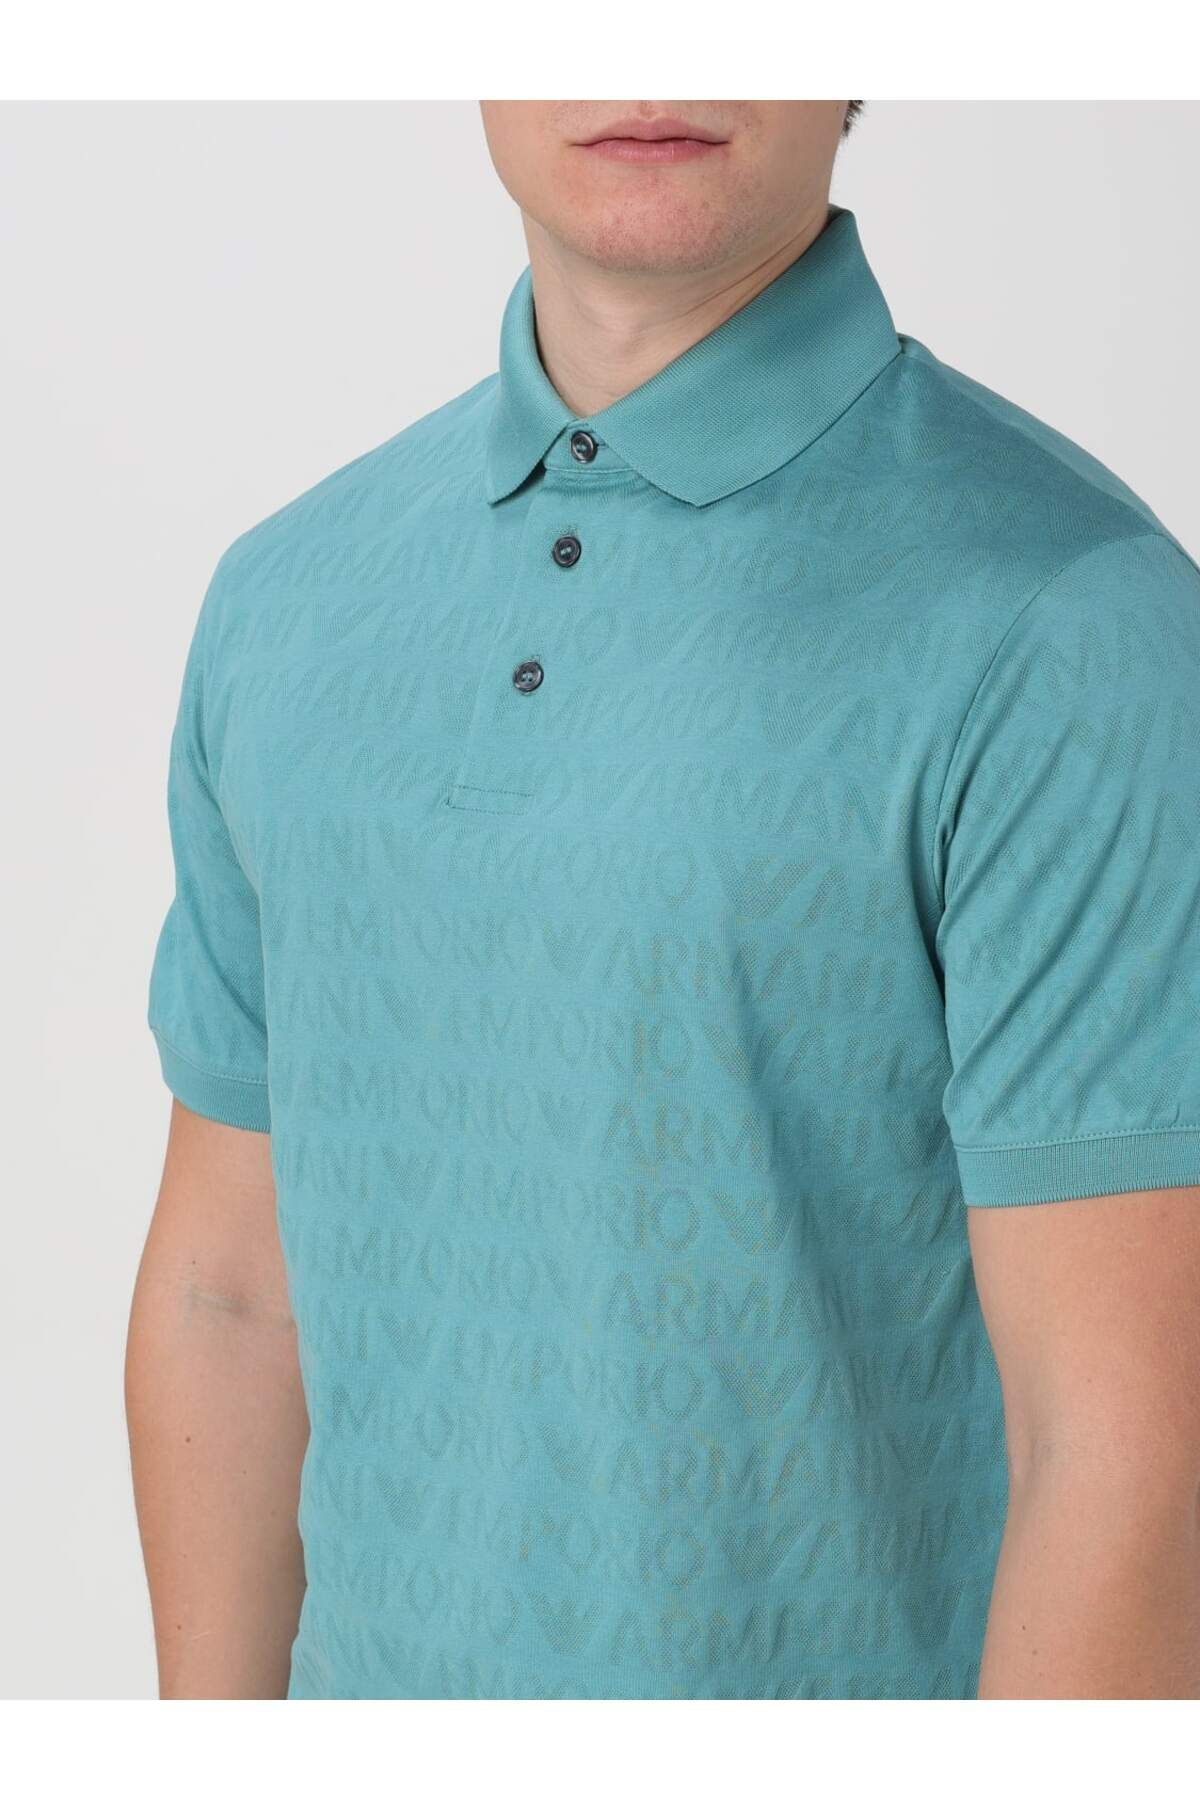 Emporio Armani Erkek Logolu Polo Yakalı Kısa Kollu Düğmeli Mavi Polo Yaka T-Shirt 3D1FM8 1JORZ-0744